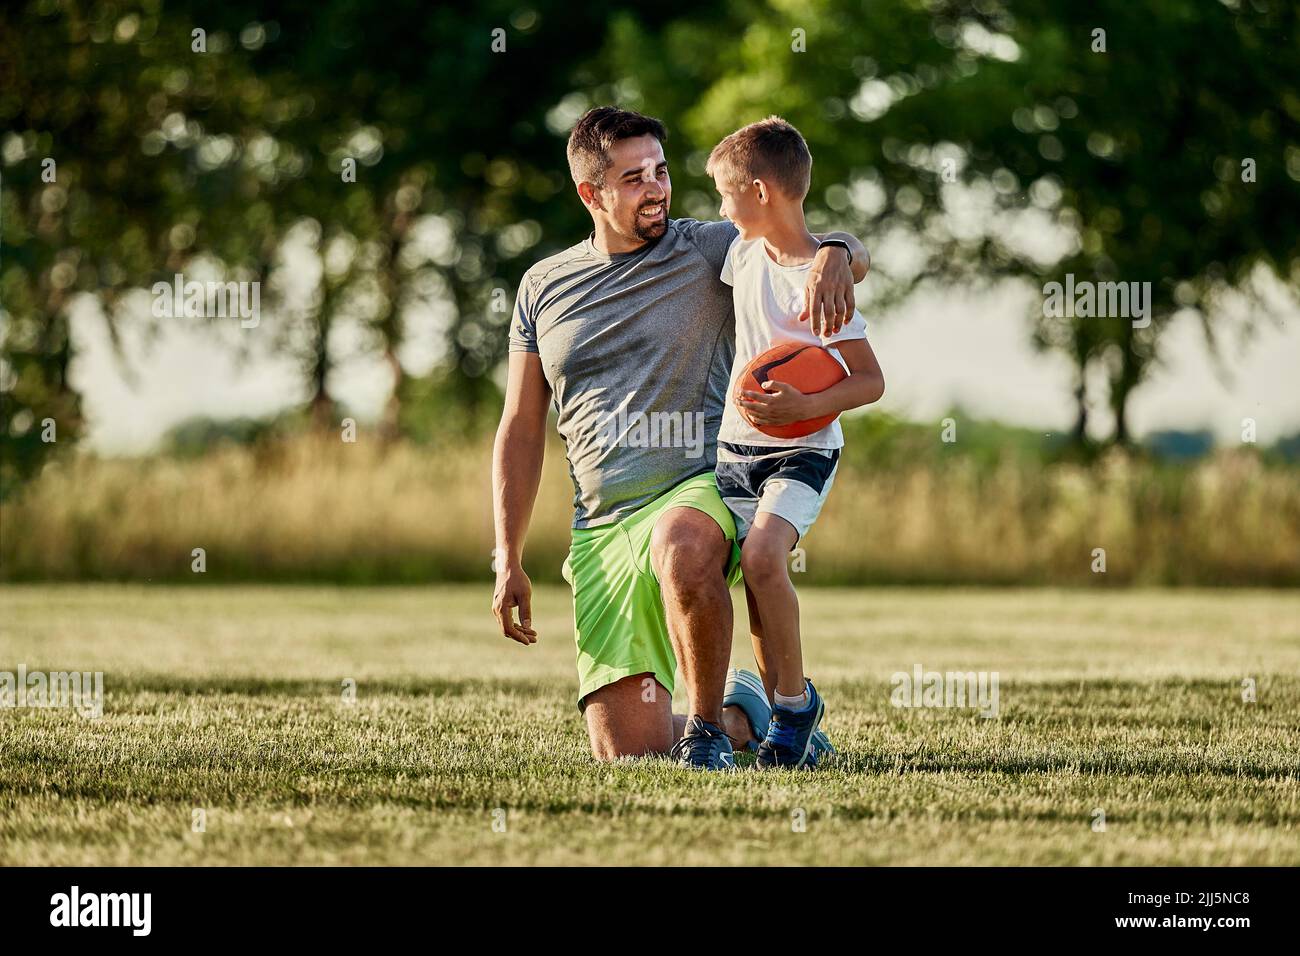 Junge hält Rugby-Ball und spricht mit Vater, der auf dem Sportplatz kniet Stockfoto